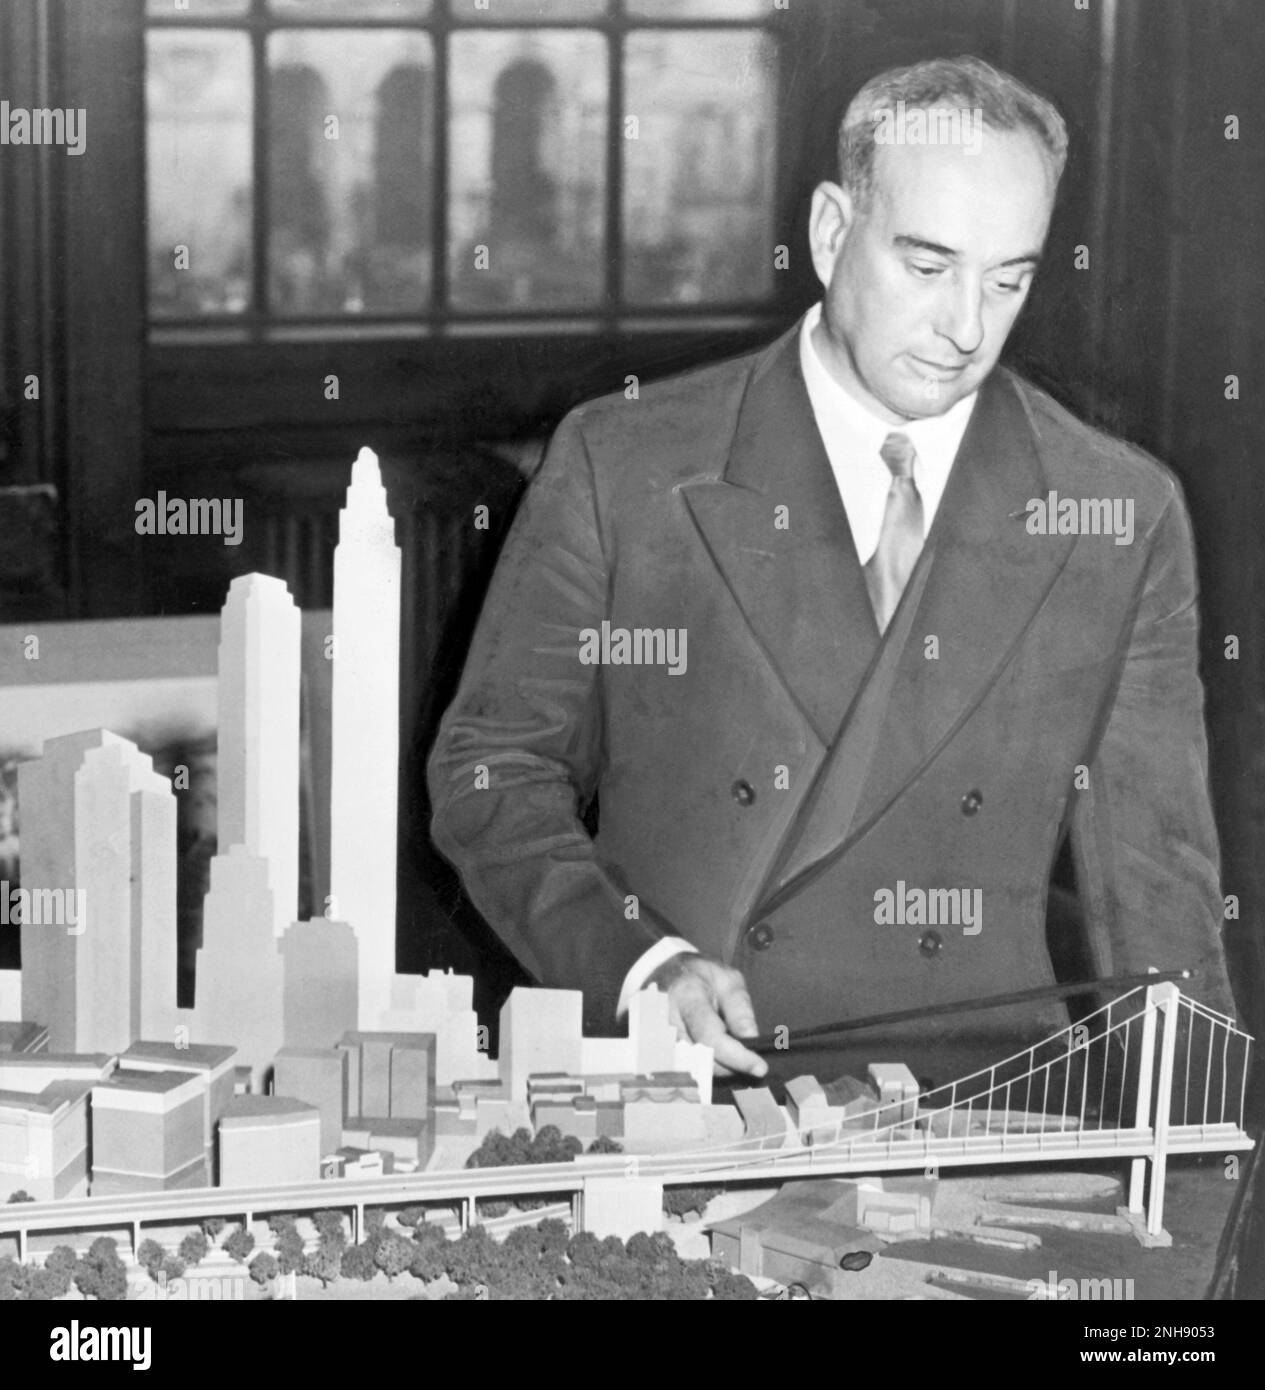 Robert Moses, commissario per il parco di New York, con il modello della proposta Battery Bridge. Robert Moses (1888-1981) è stato un influente funzionario pubblico americano la cui pianificazione urbana ha ridefinito l'area metropolitana di New York. Fotografia di C.M. Stieglitz, 1939. Foto Stock